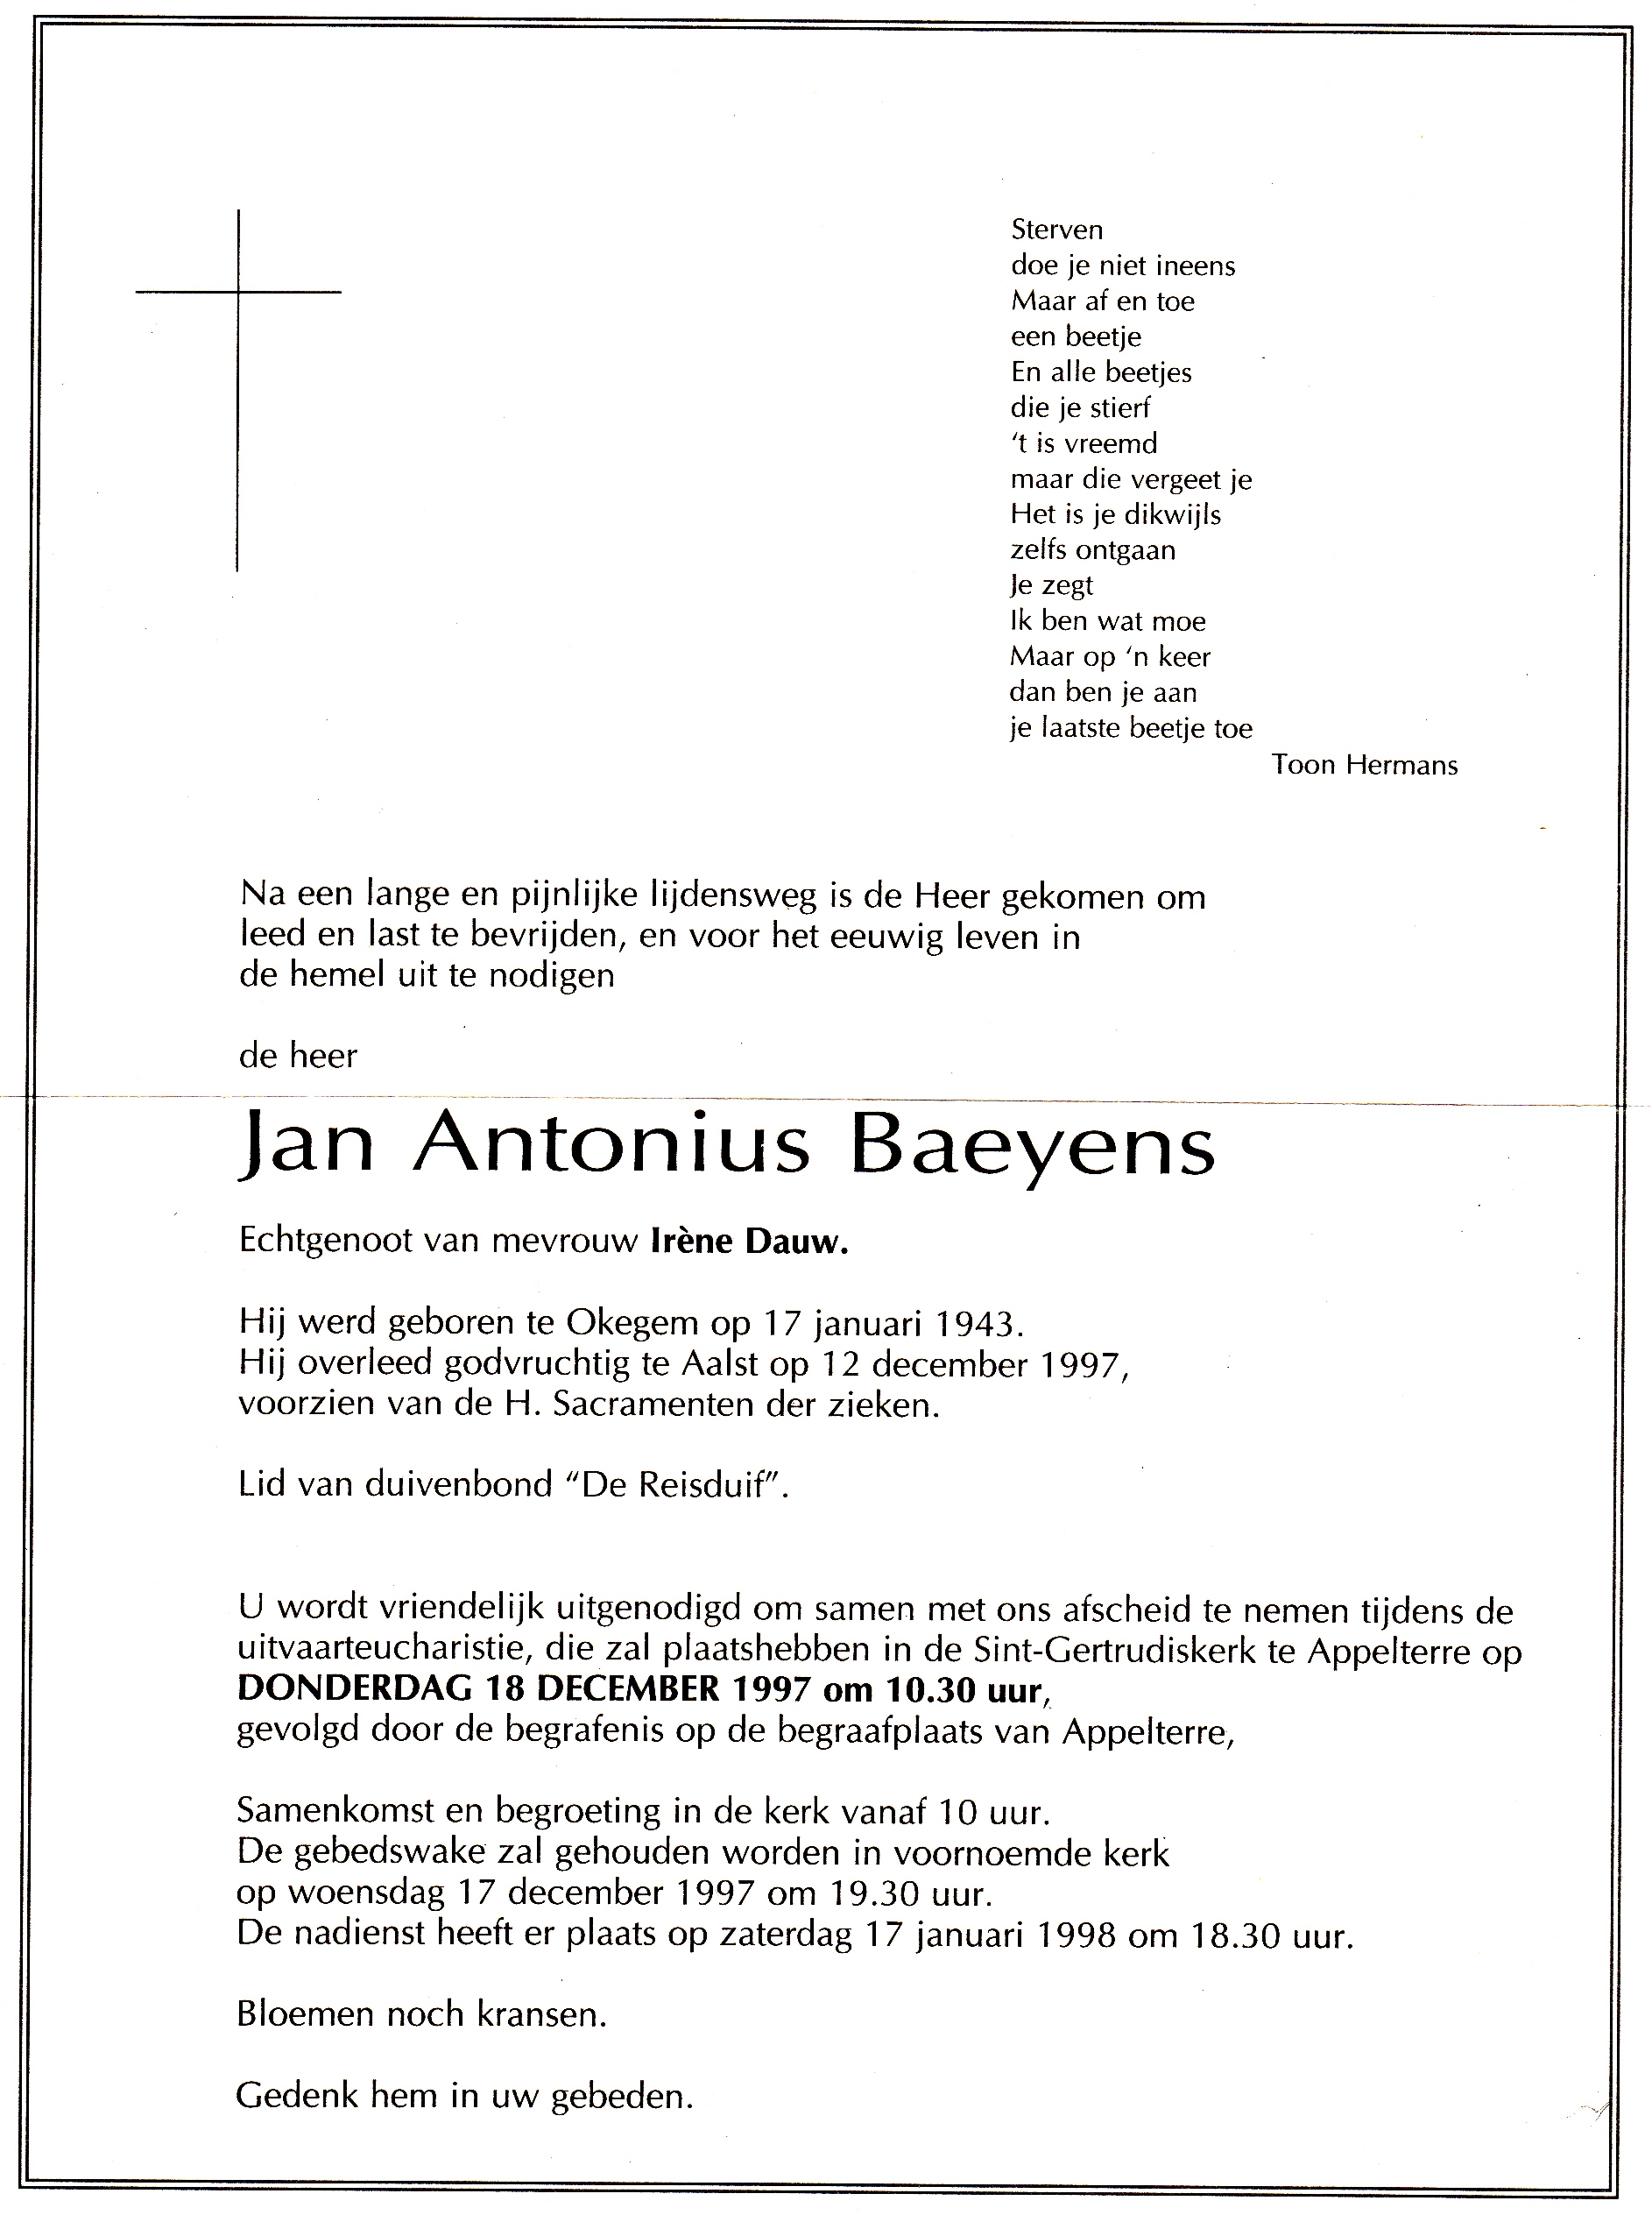 Baeyens Jan Antonius 